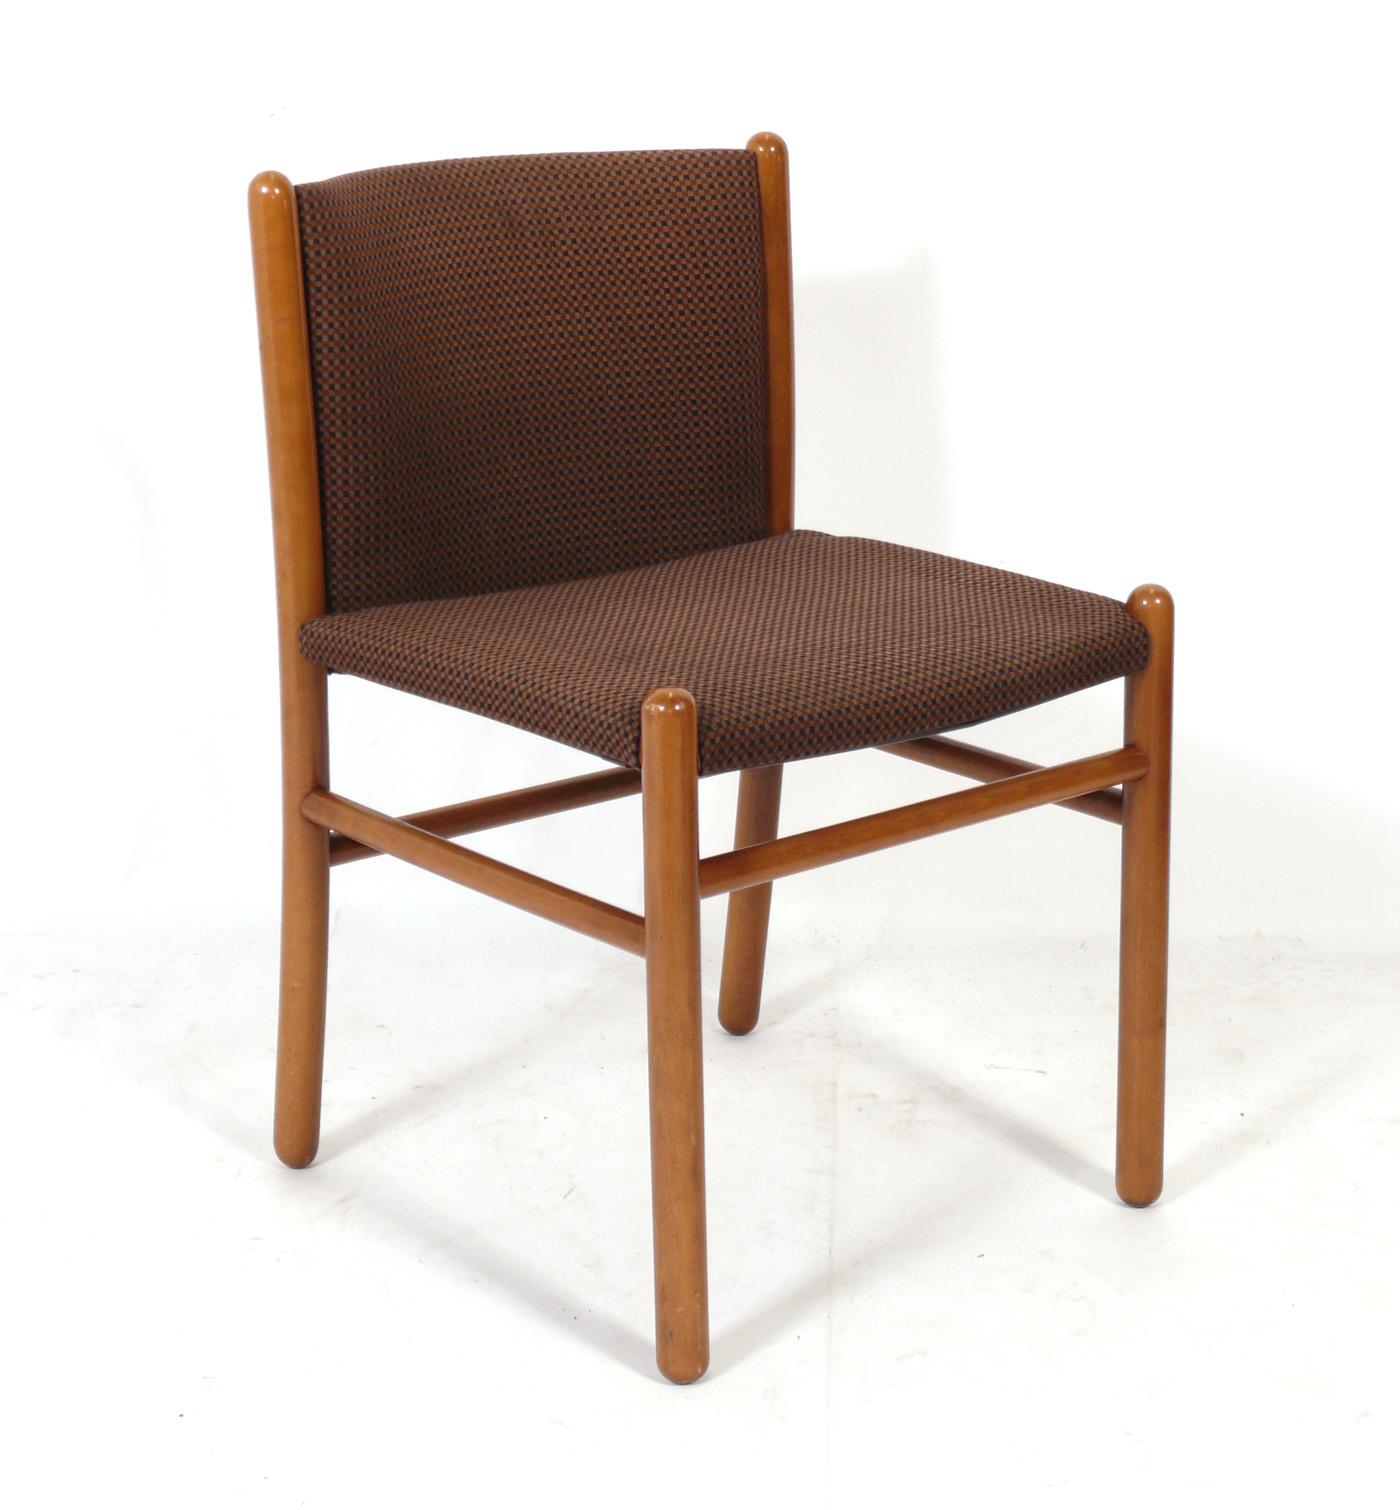 Satz von vier italienischen Esszimmerstühlen, entworfen von Gianfranco Frattini für Lema S.P.A., Italien, ca. 1960er Jahre. Die Stühle werden gerade neu gepolstert und können mit Ihrem Stoff ergänzt werden. Schicken Sie uns einfach 10 Meter Ihres